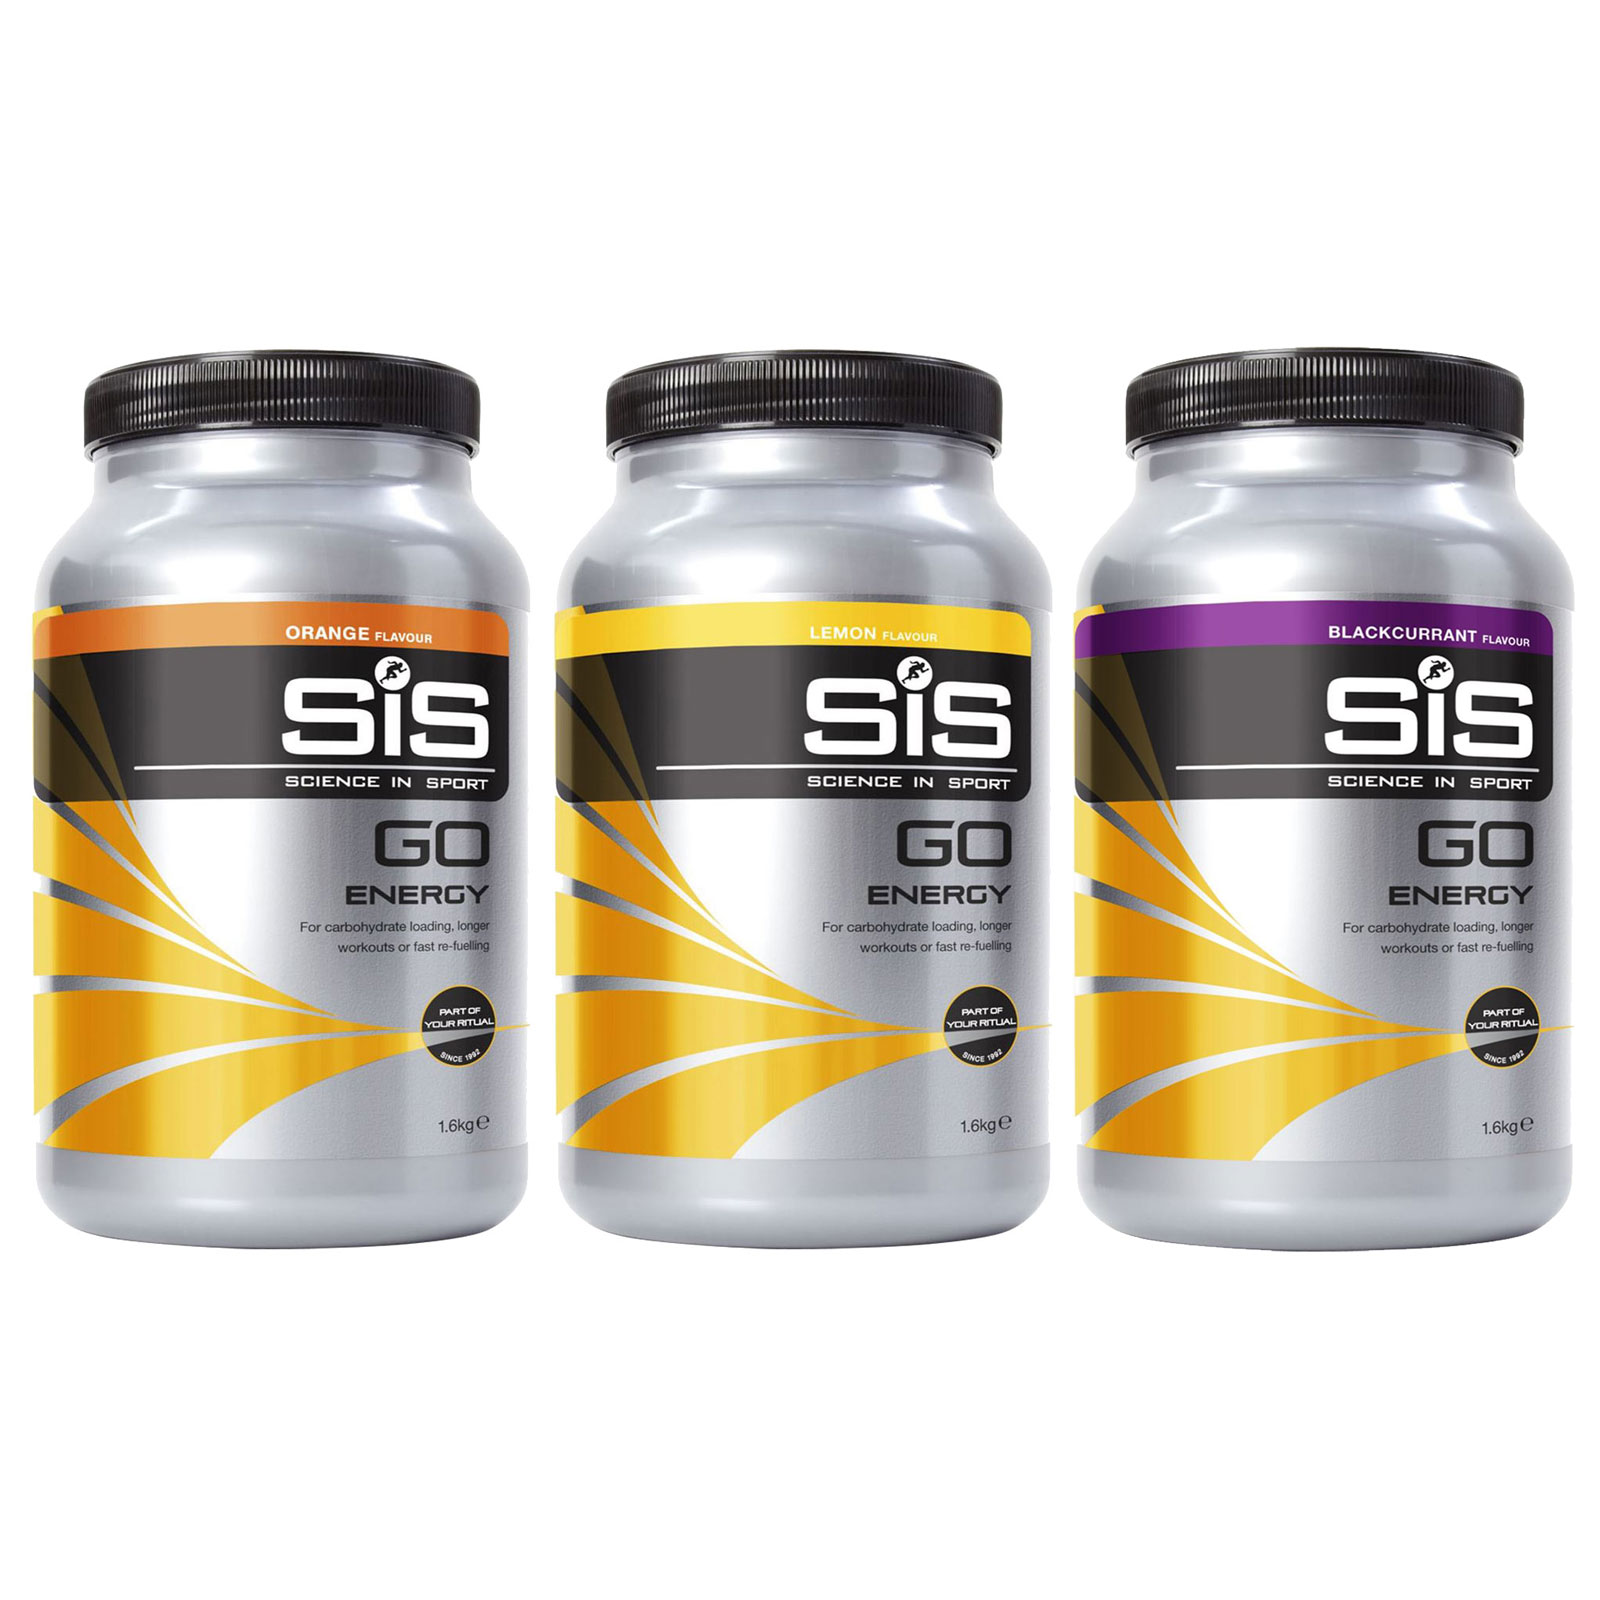 Productfoto van SiS GO Energy Powder - Carbohydrate Beverage Powder - 1600g